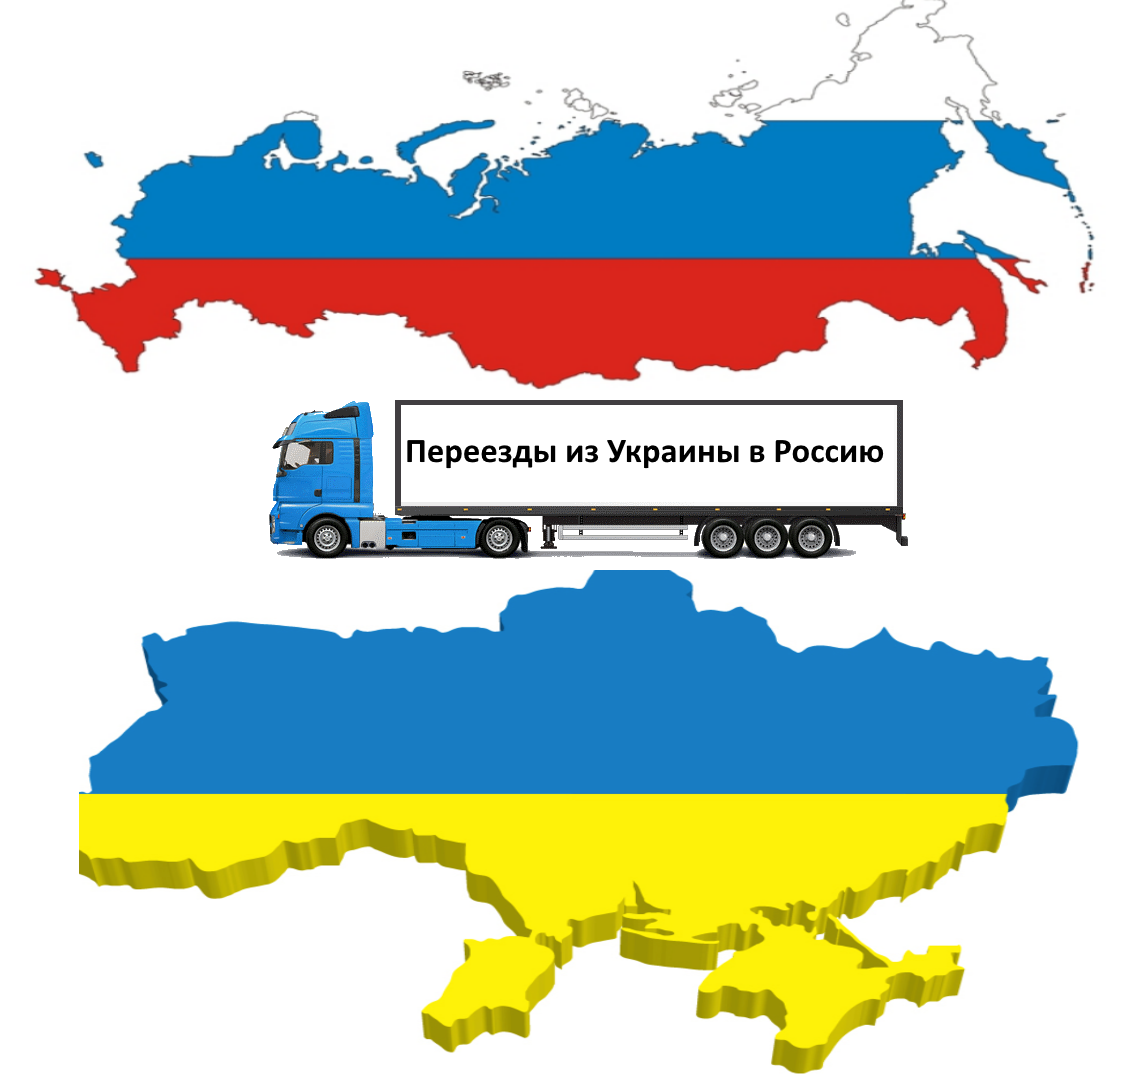 Как переехать в украину. Переезд из Украины в Россию. Украина – это Россия. Переезжай в Россию. Карта Украины.